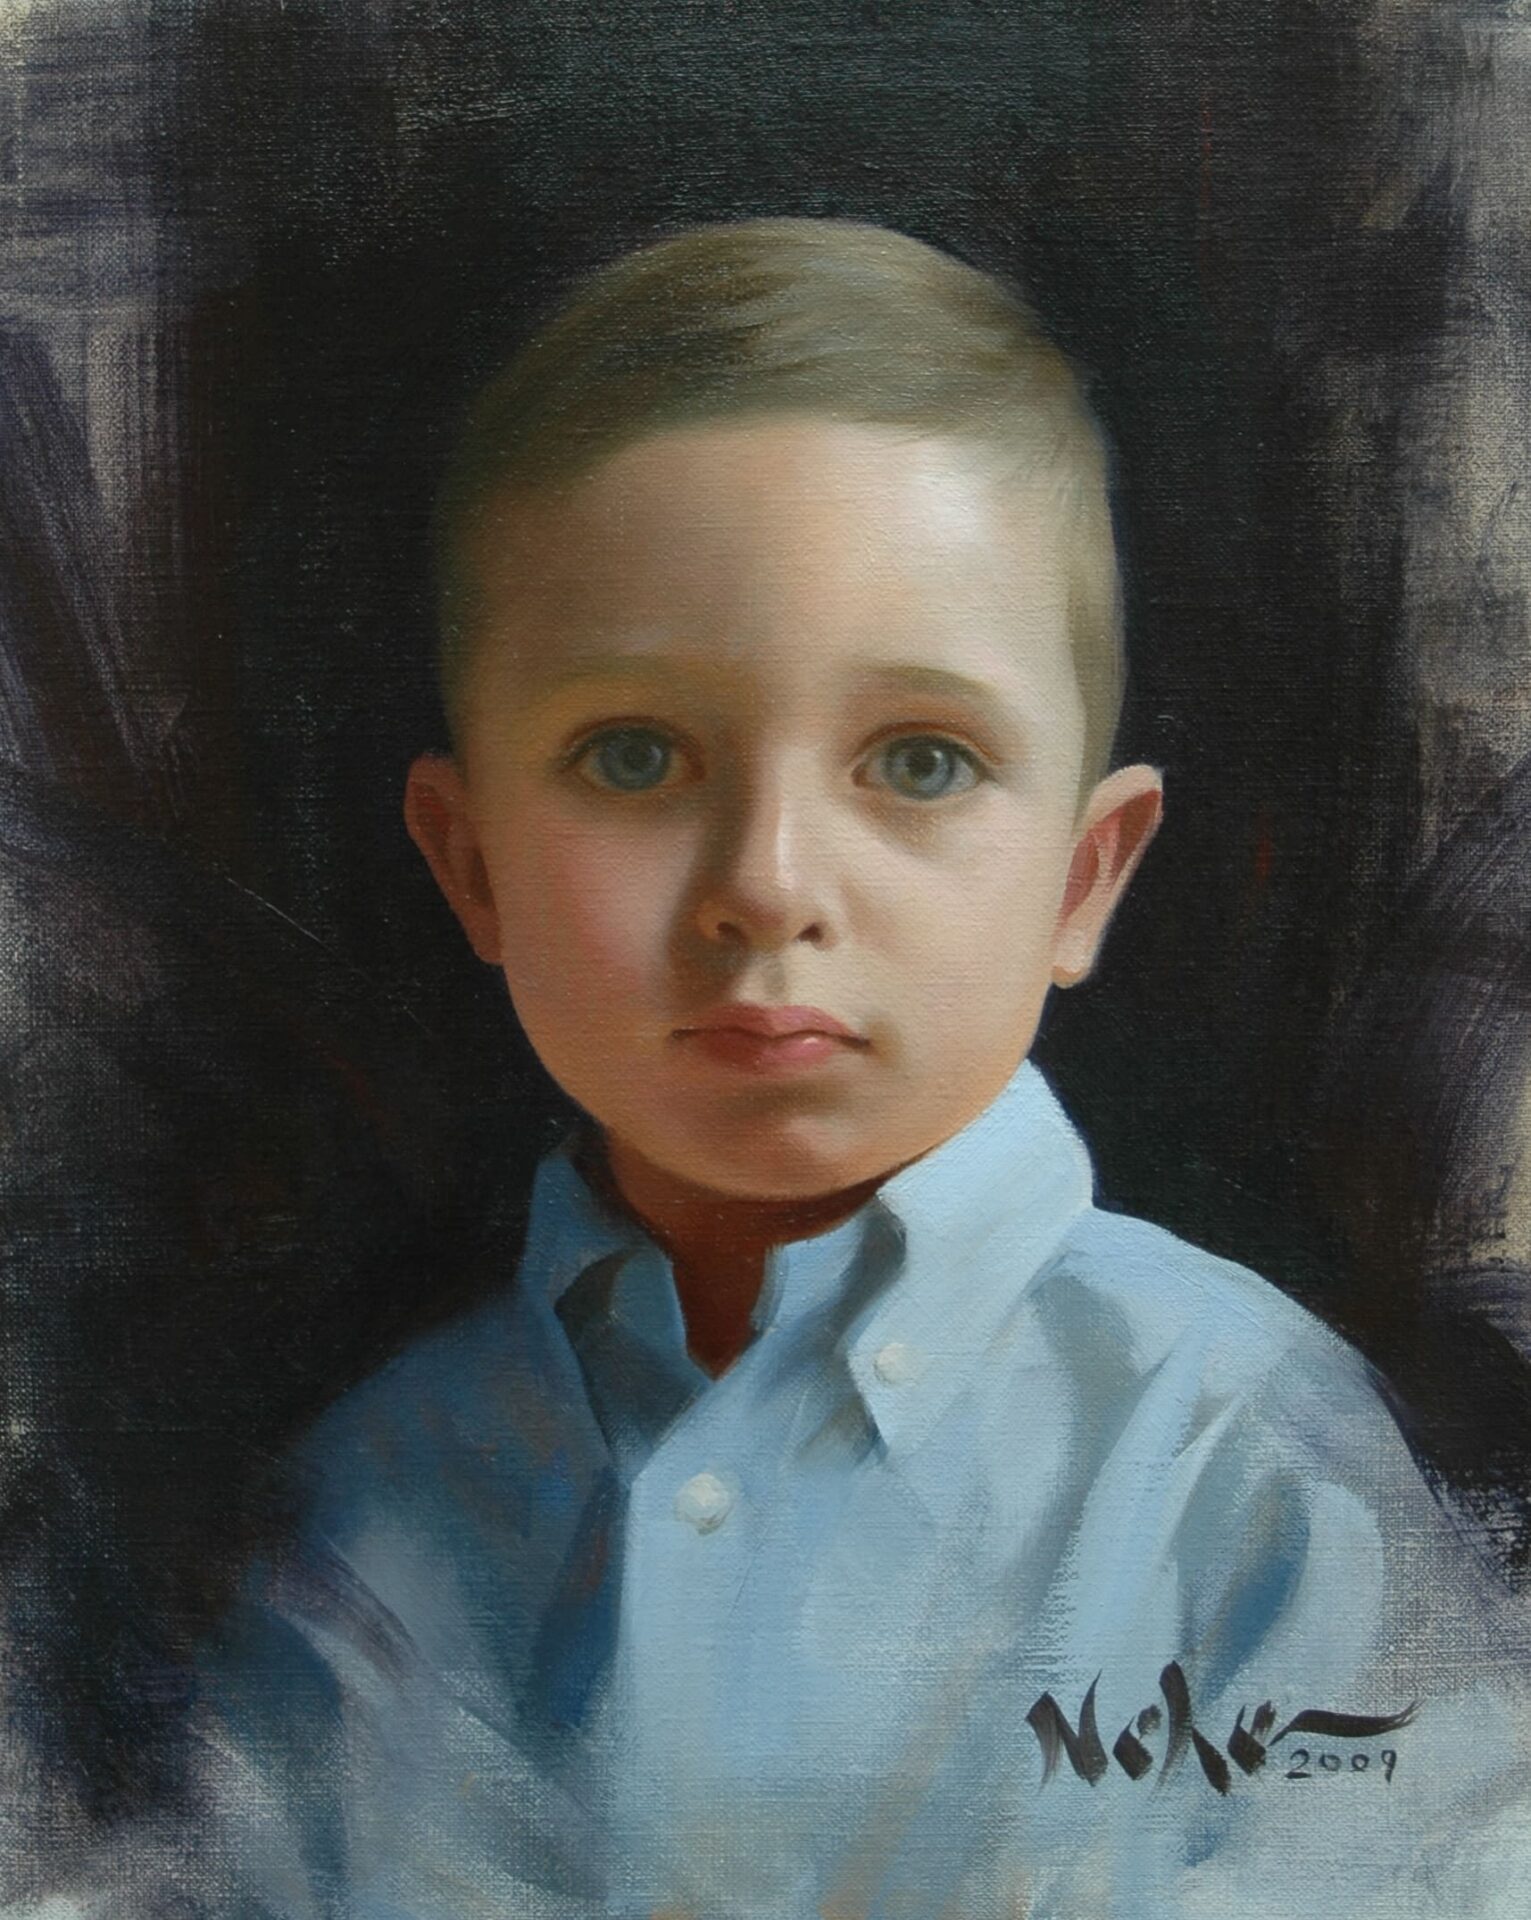 A boy’s portrait painting